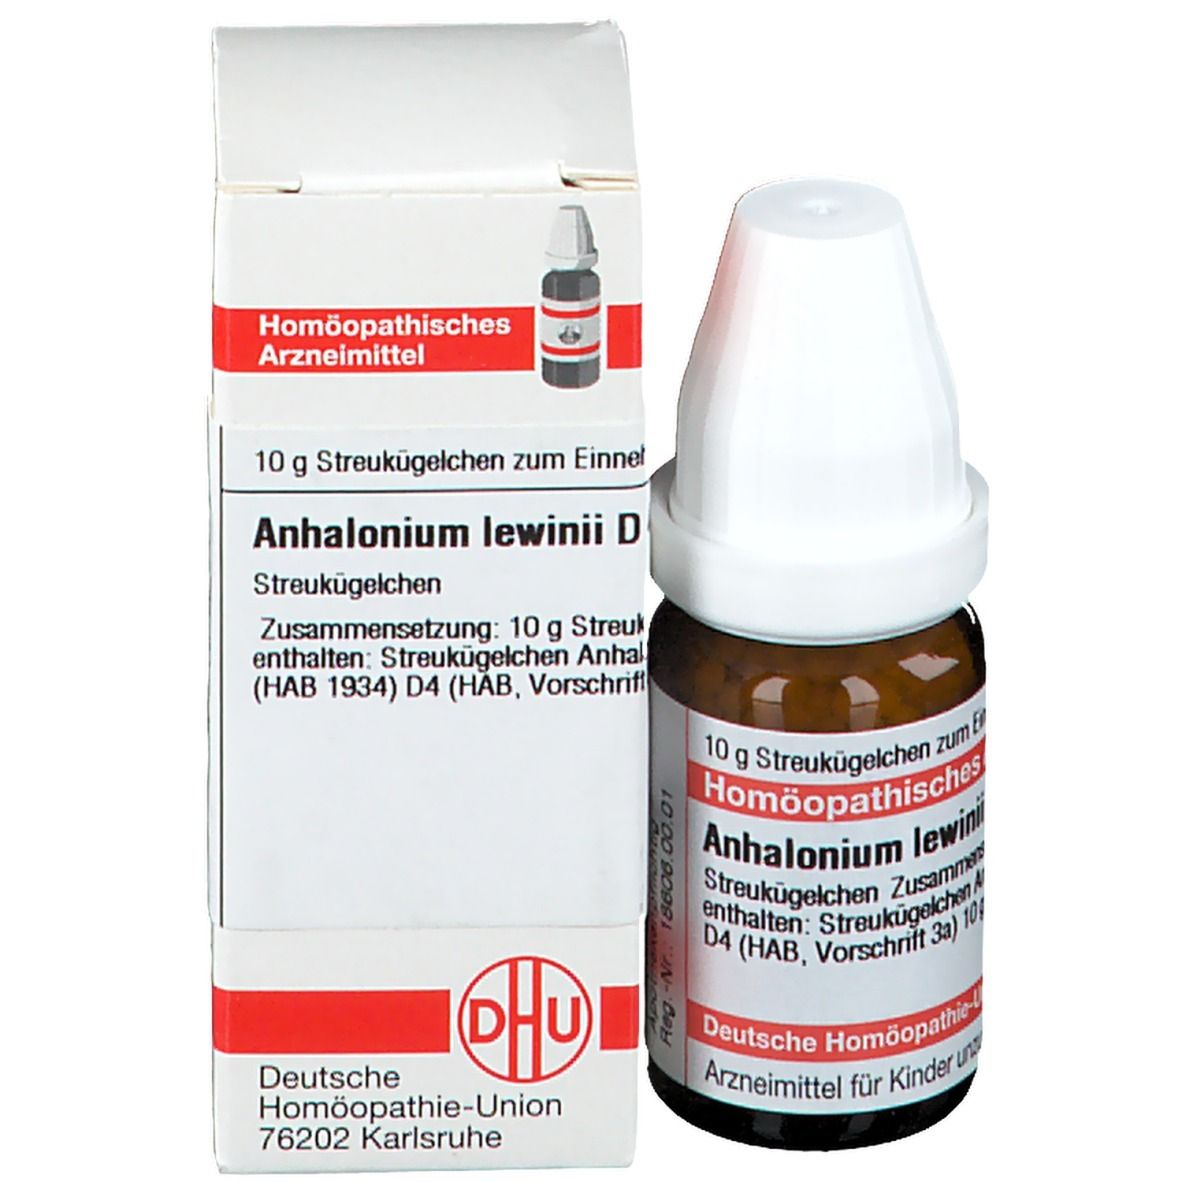 DHU Anhalonium Lewinii D4